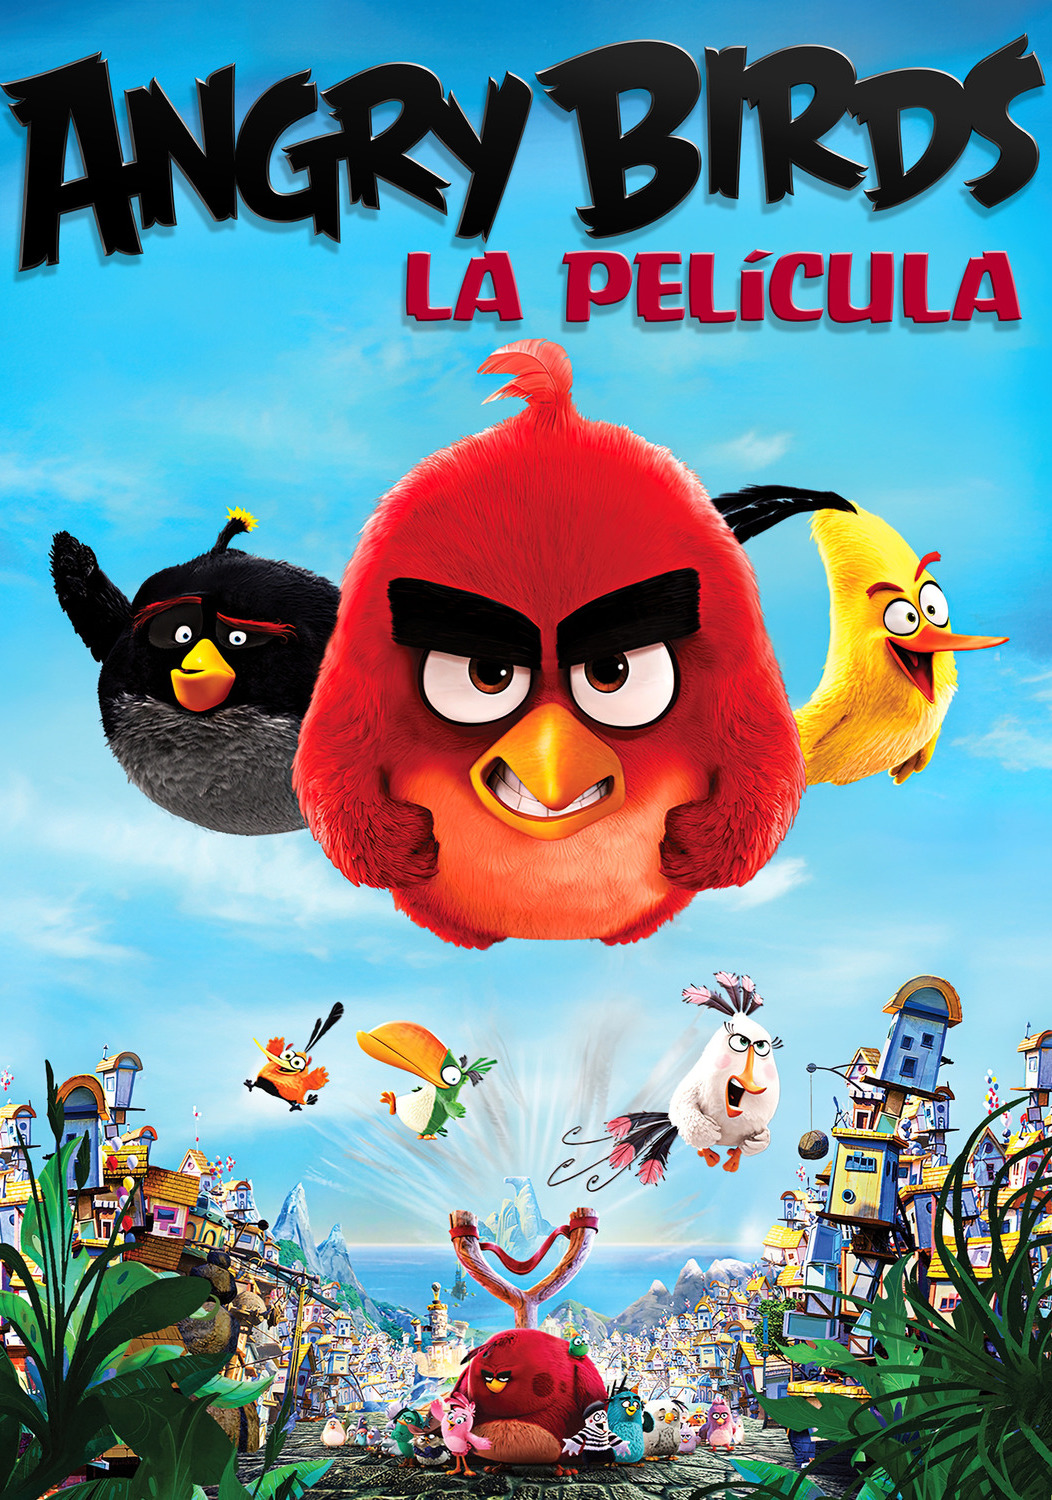 Angry Birds: La Pelicula (2016) 